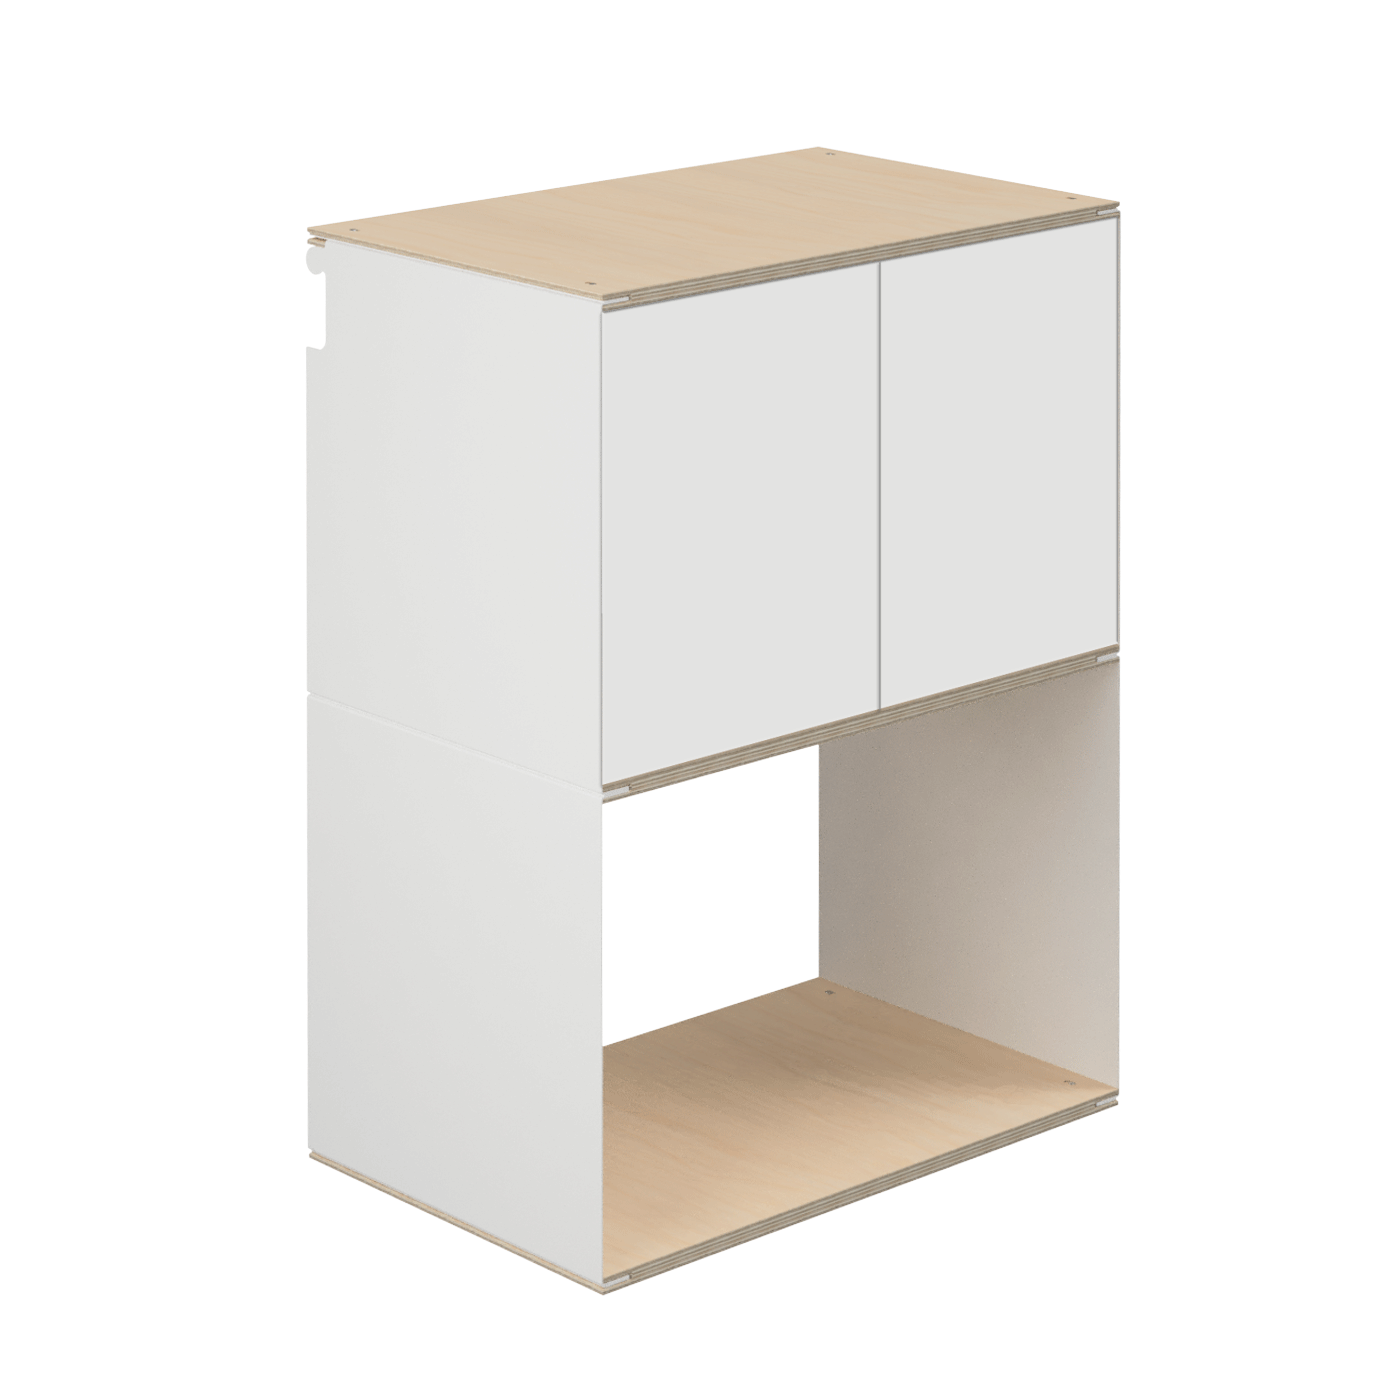 A05 Modular shelf